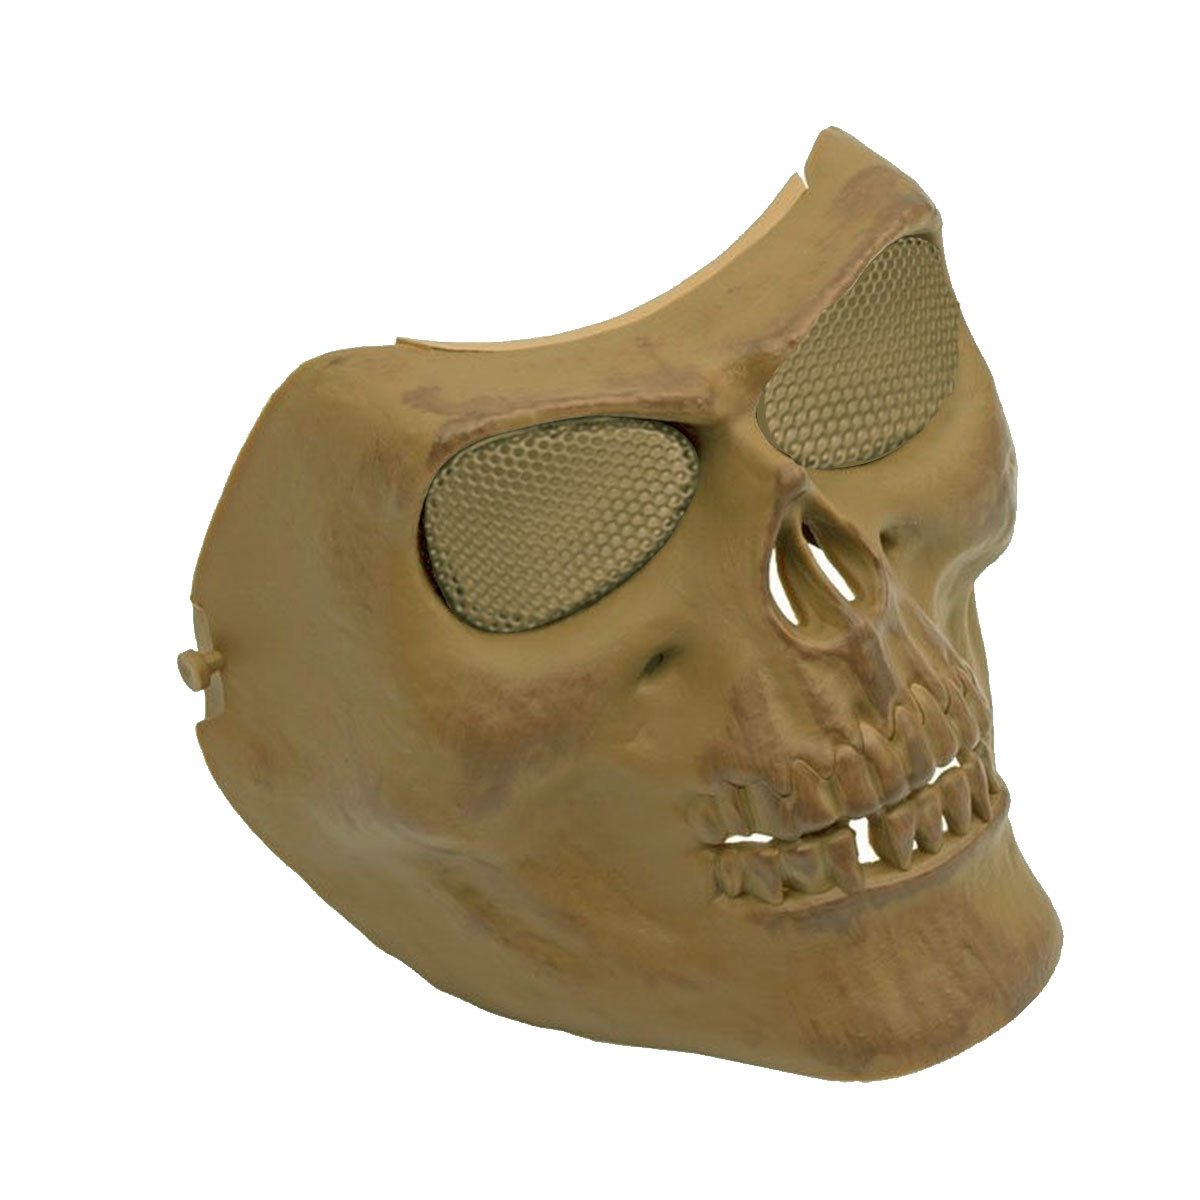 Mascara de Proteção SRC Caveira Malha metalica Tan